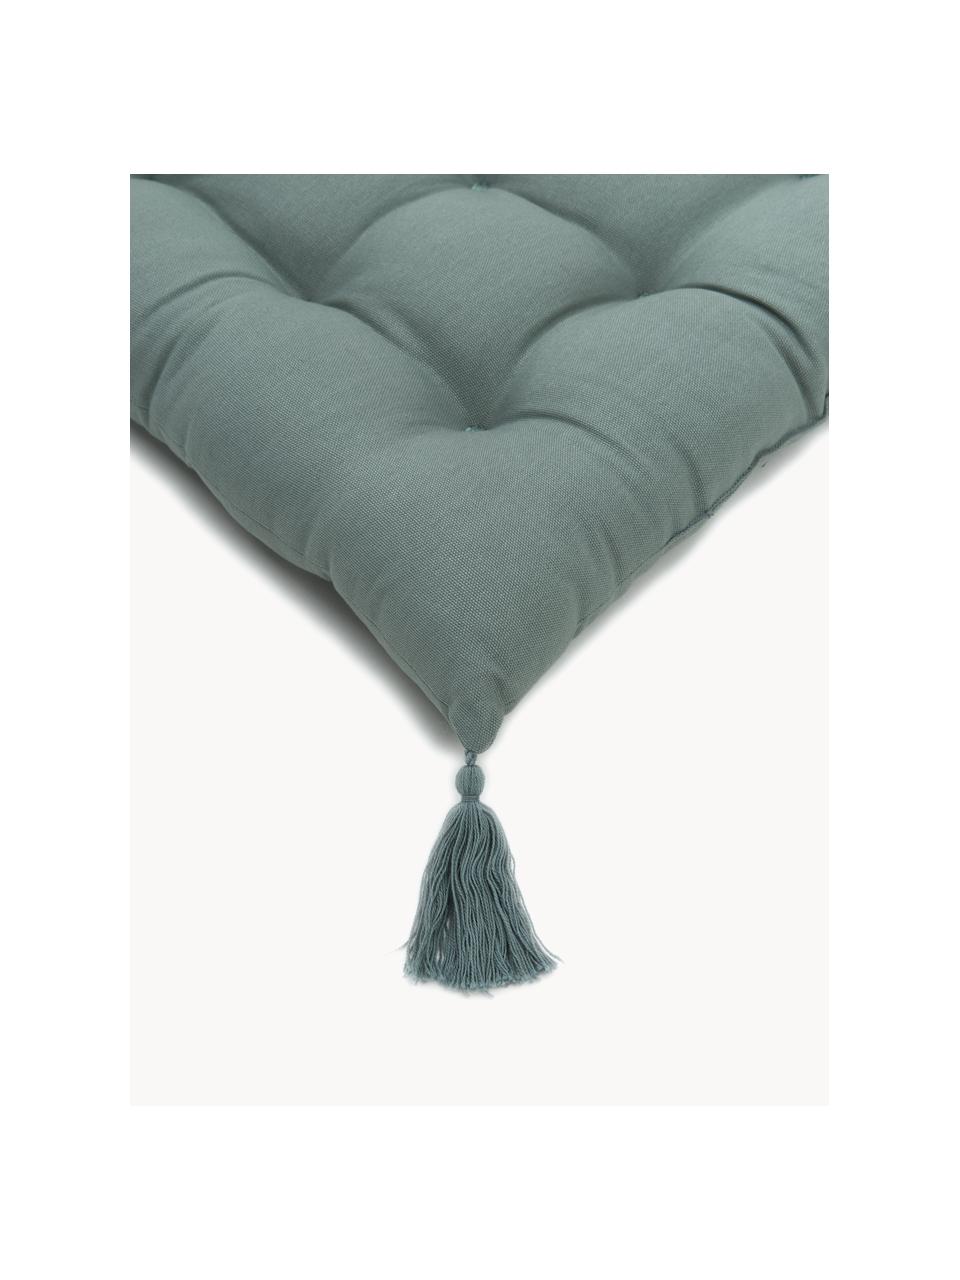 Cuscino sedia con nappe Ava, Rivestimento: 100% cotone, Verde, Larg. 40 x Lung. 40 cm